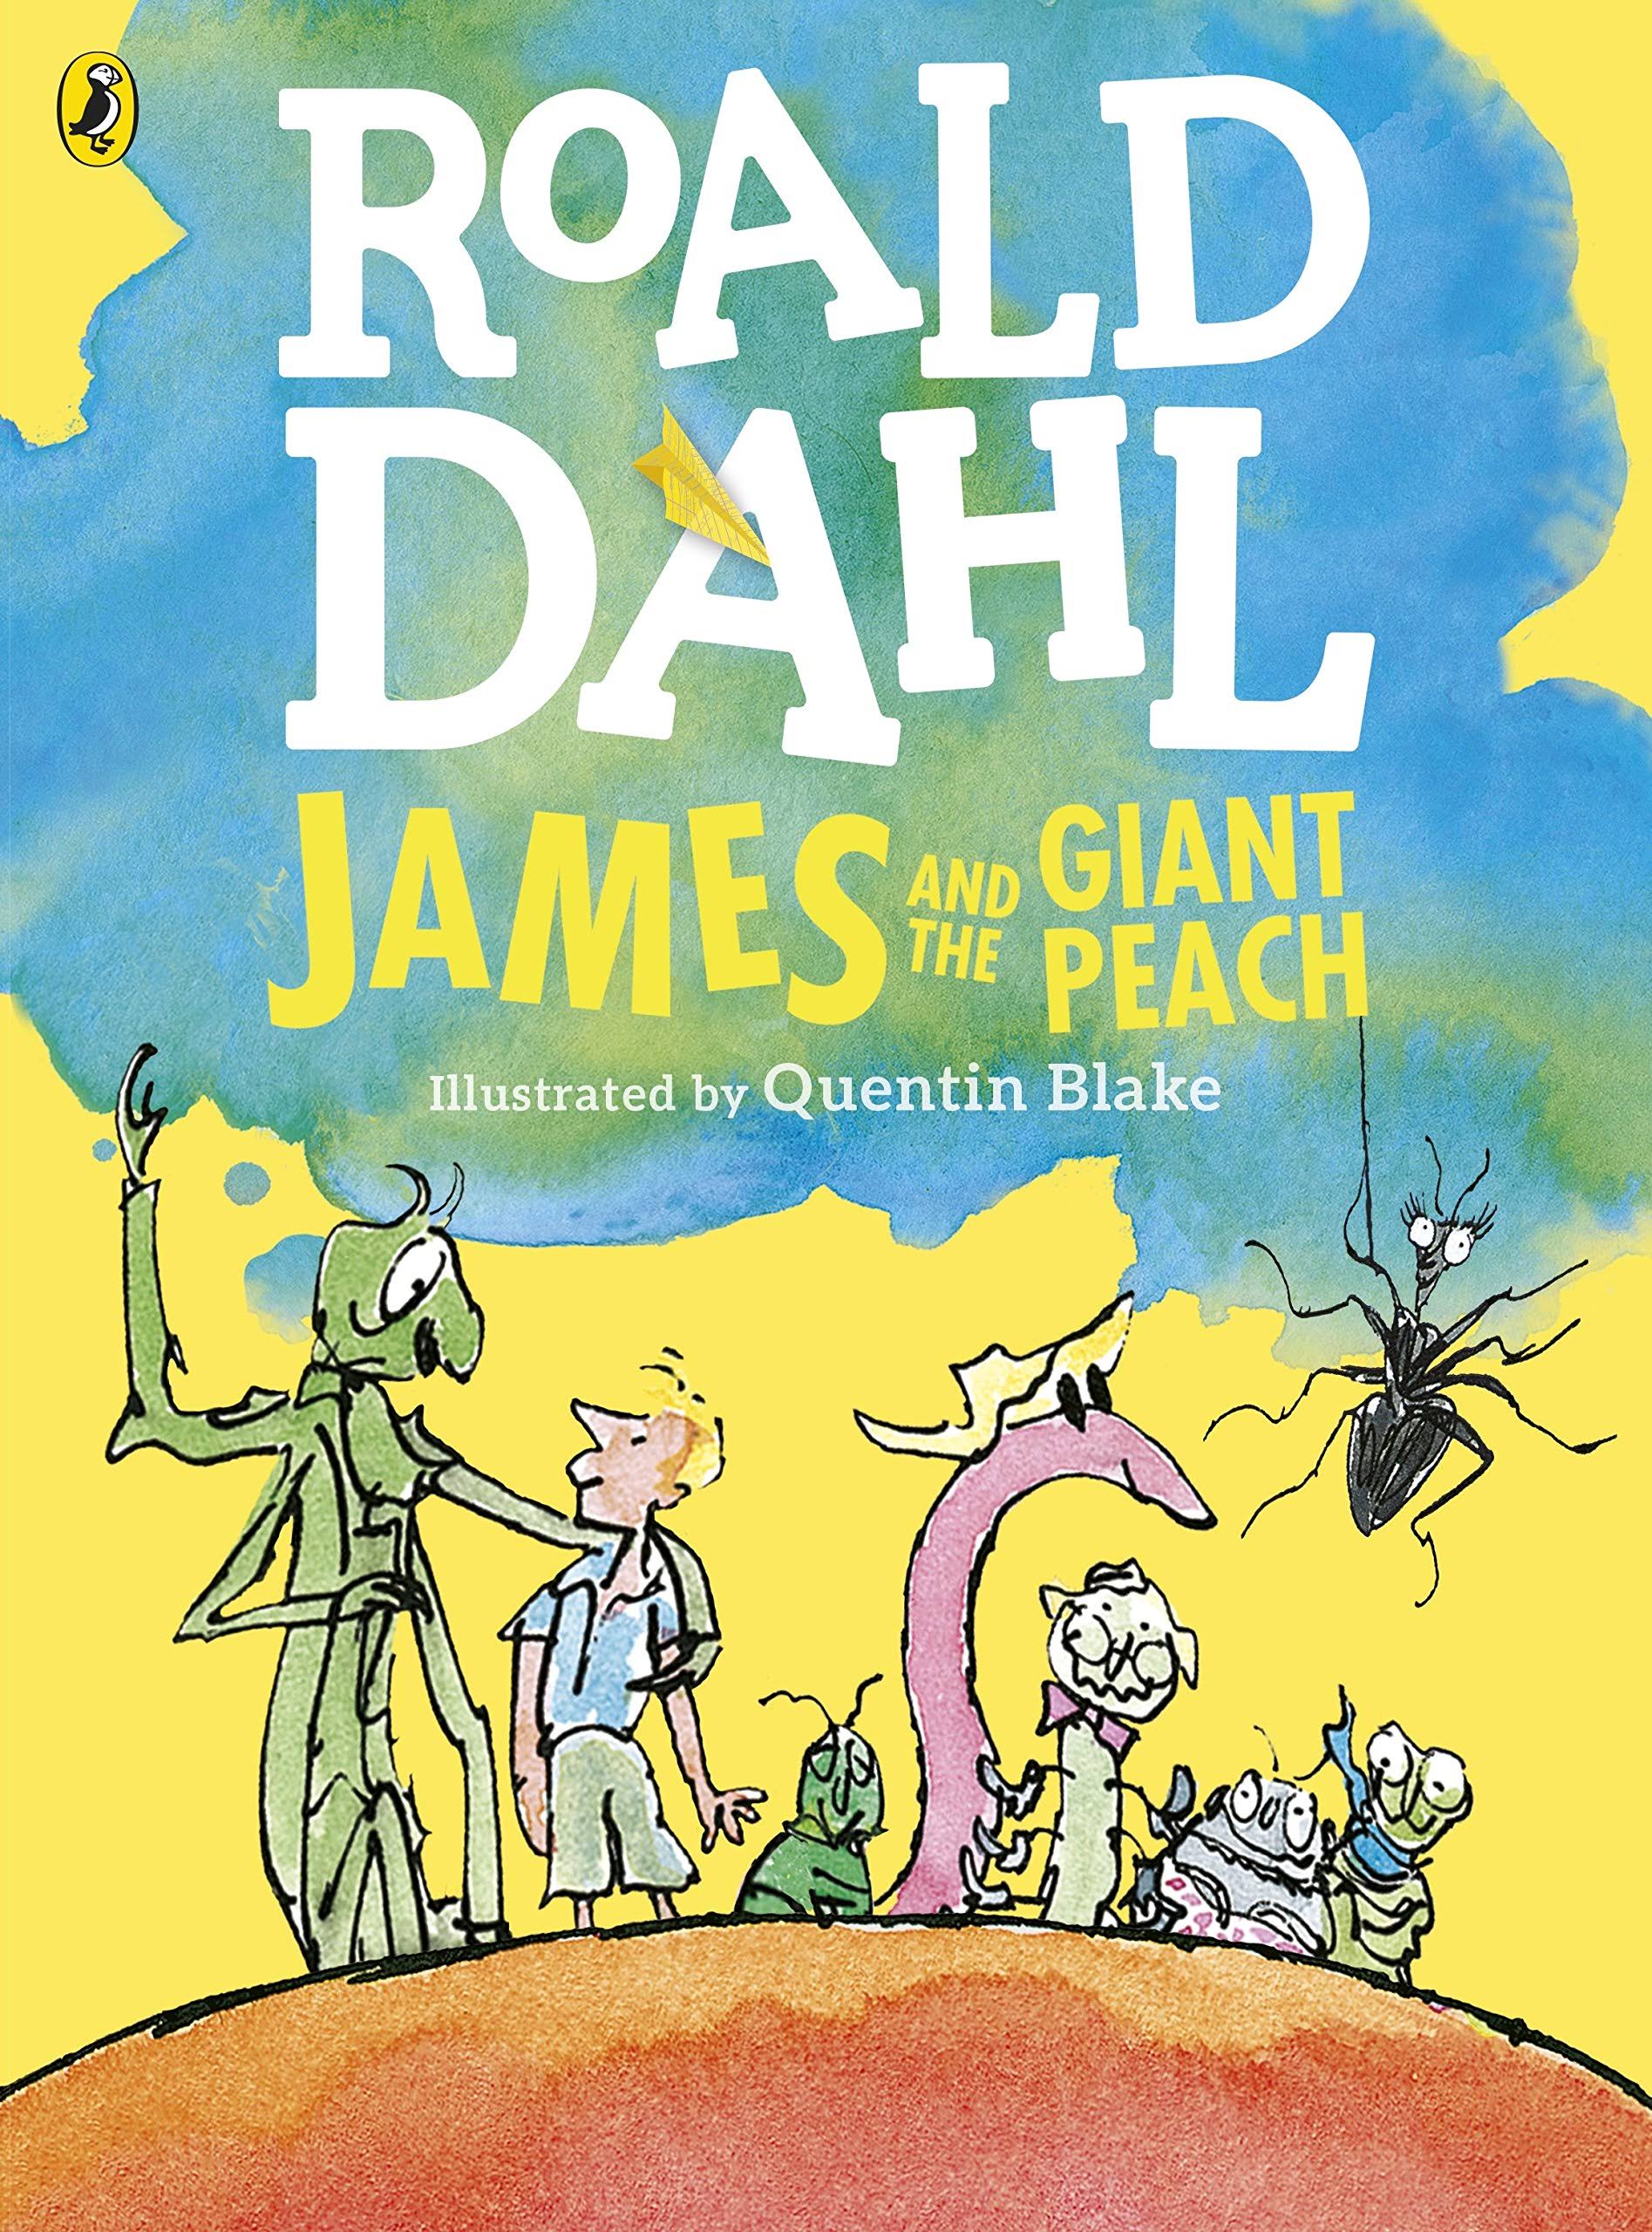 James And The Giant Peach - Roald Dahl